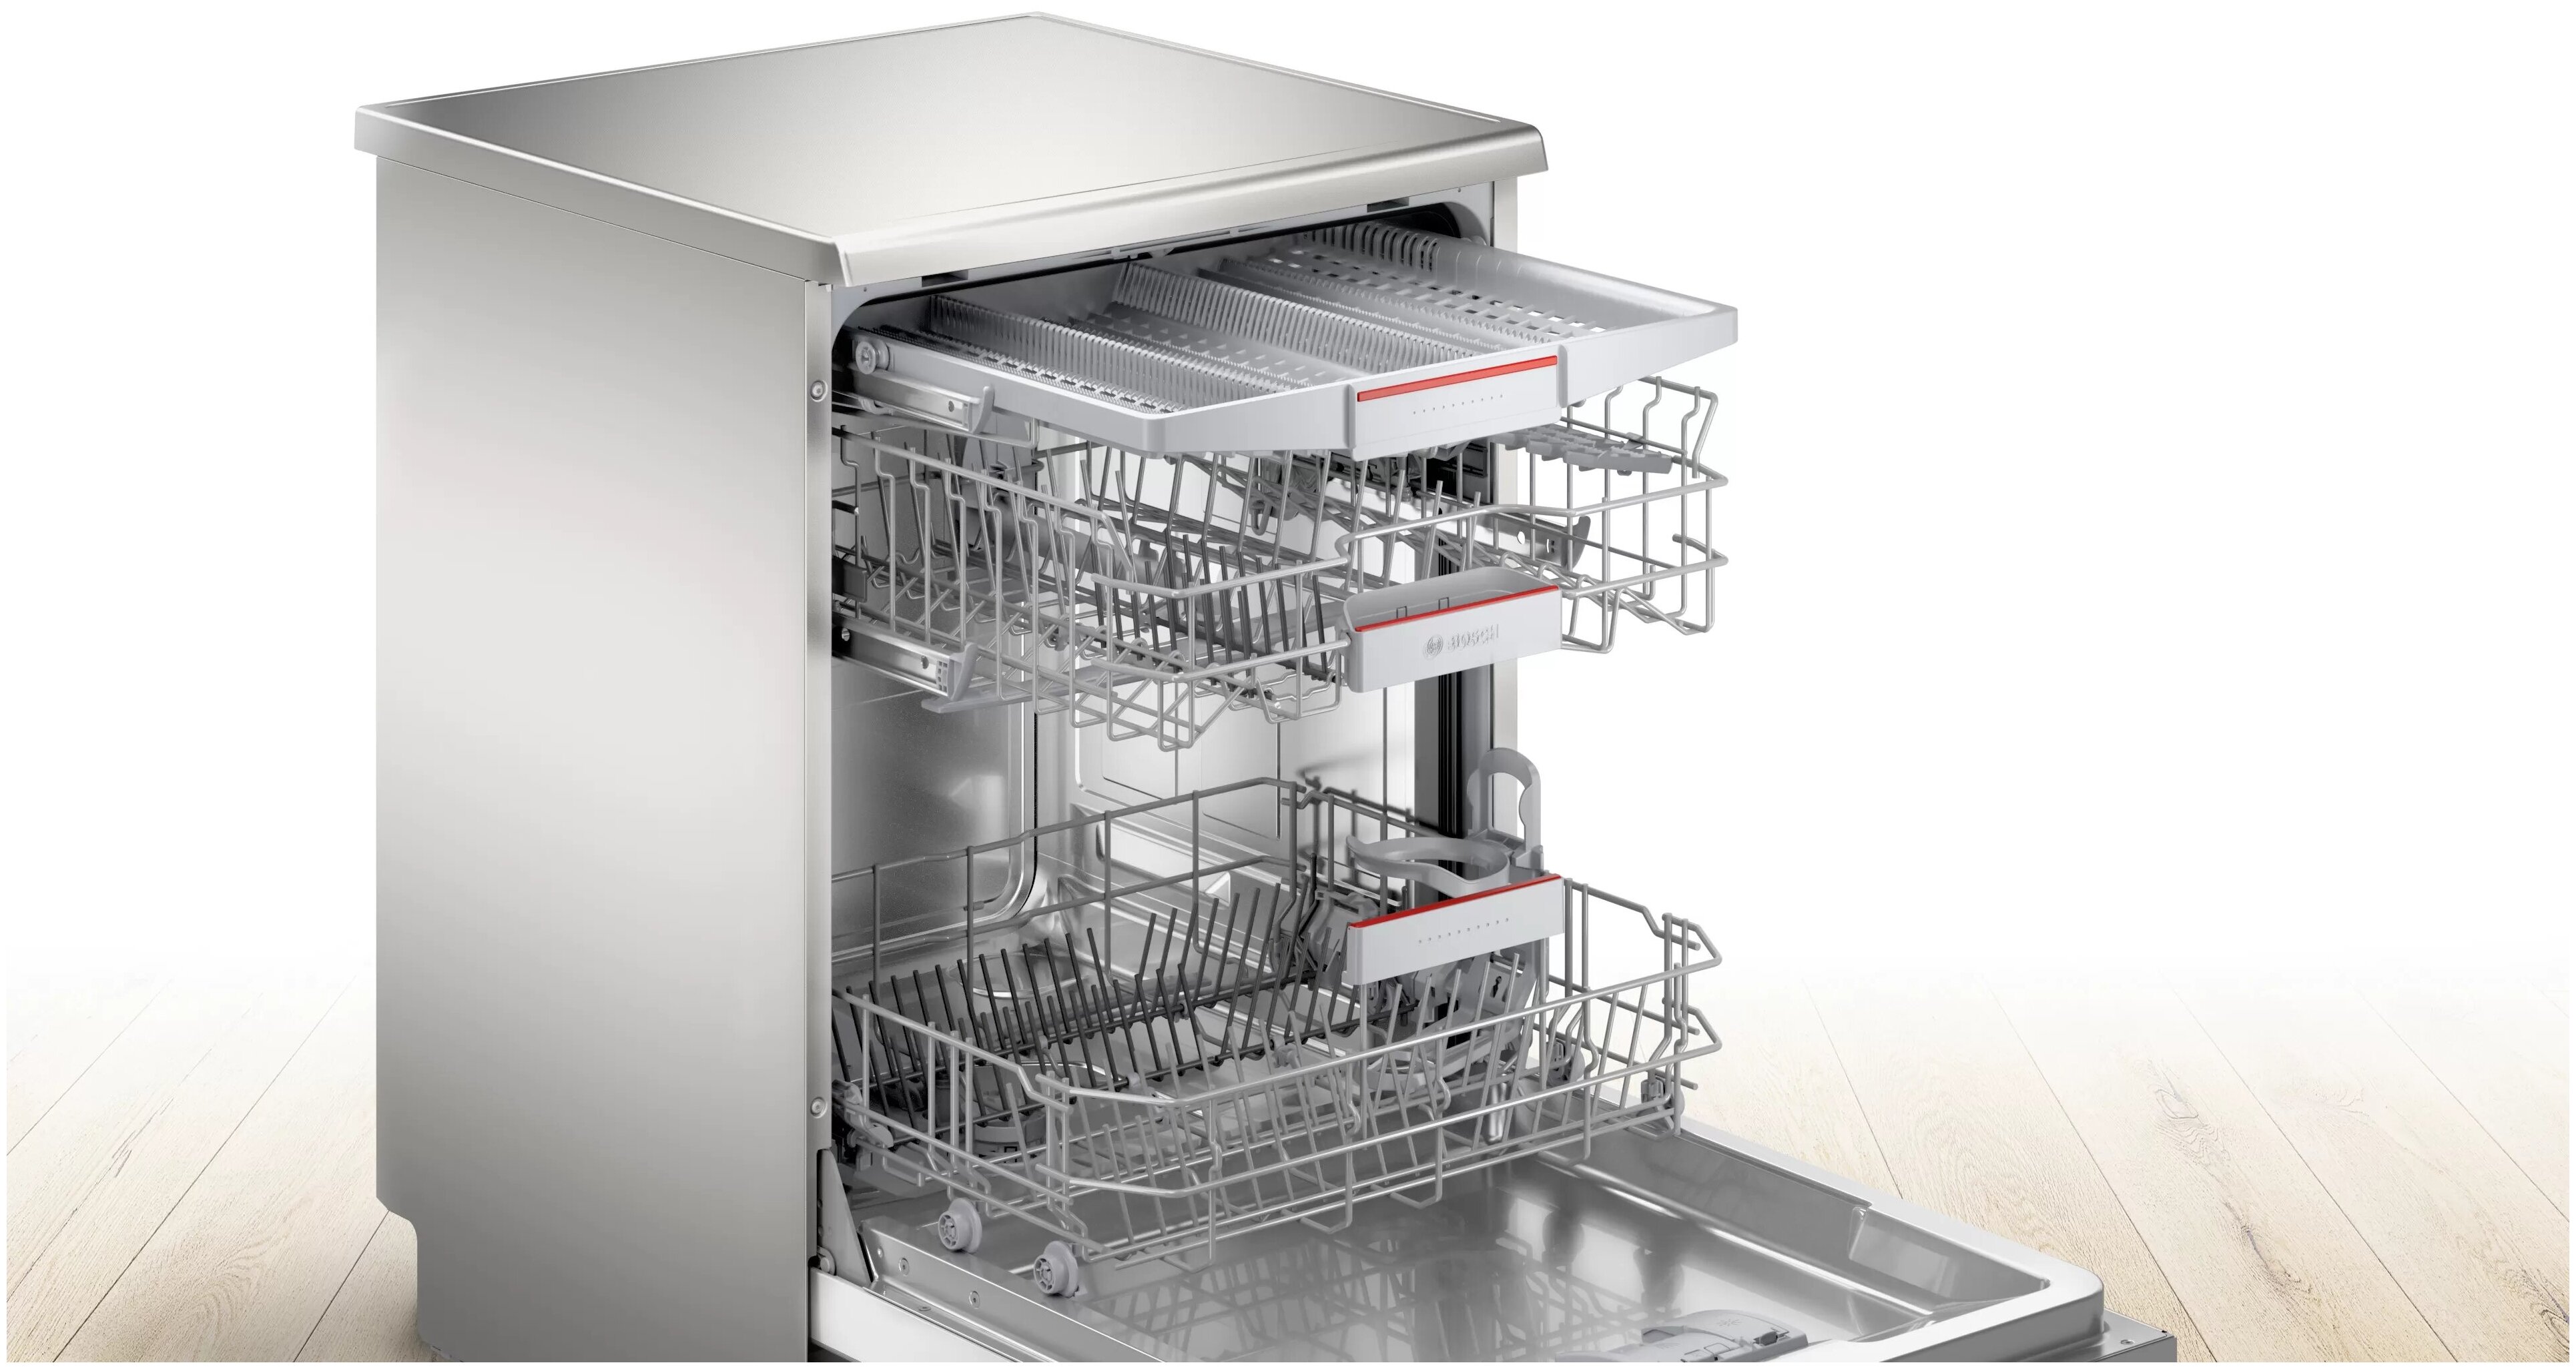 Посудомойка бош отдельностоящая. Посудомоечная машина Bosch sms25ai01r. Посудомоечная машина Bosch 60 см отдельностоящая. Посудомоечная машина бош sms24aw00r. Bosch sms4hmw01r.